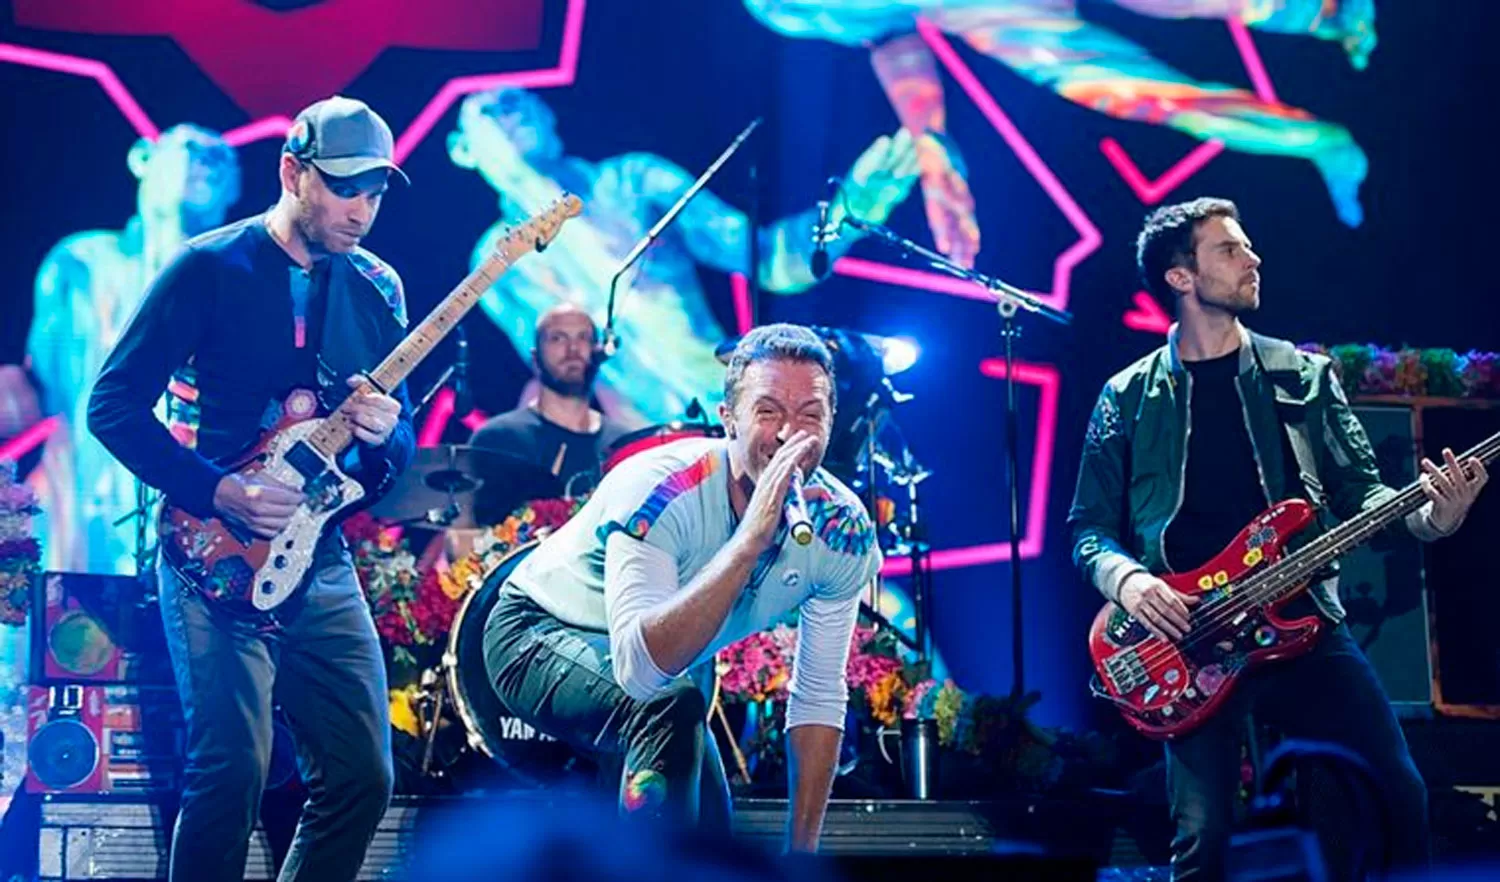 Con una carta a sus fans, Coldplay anunció un nuevo disco doble